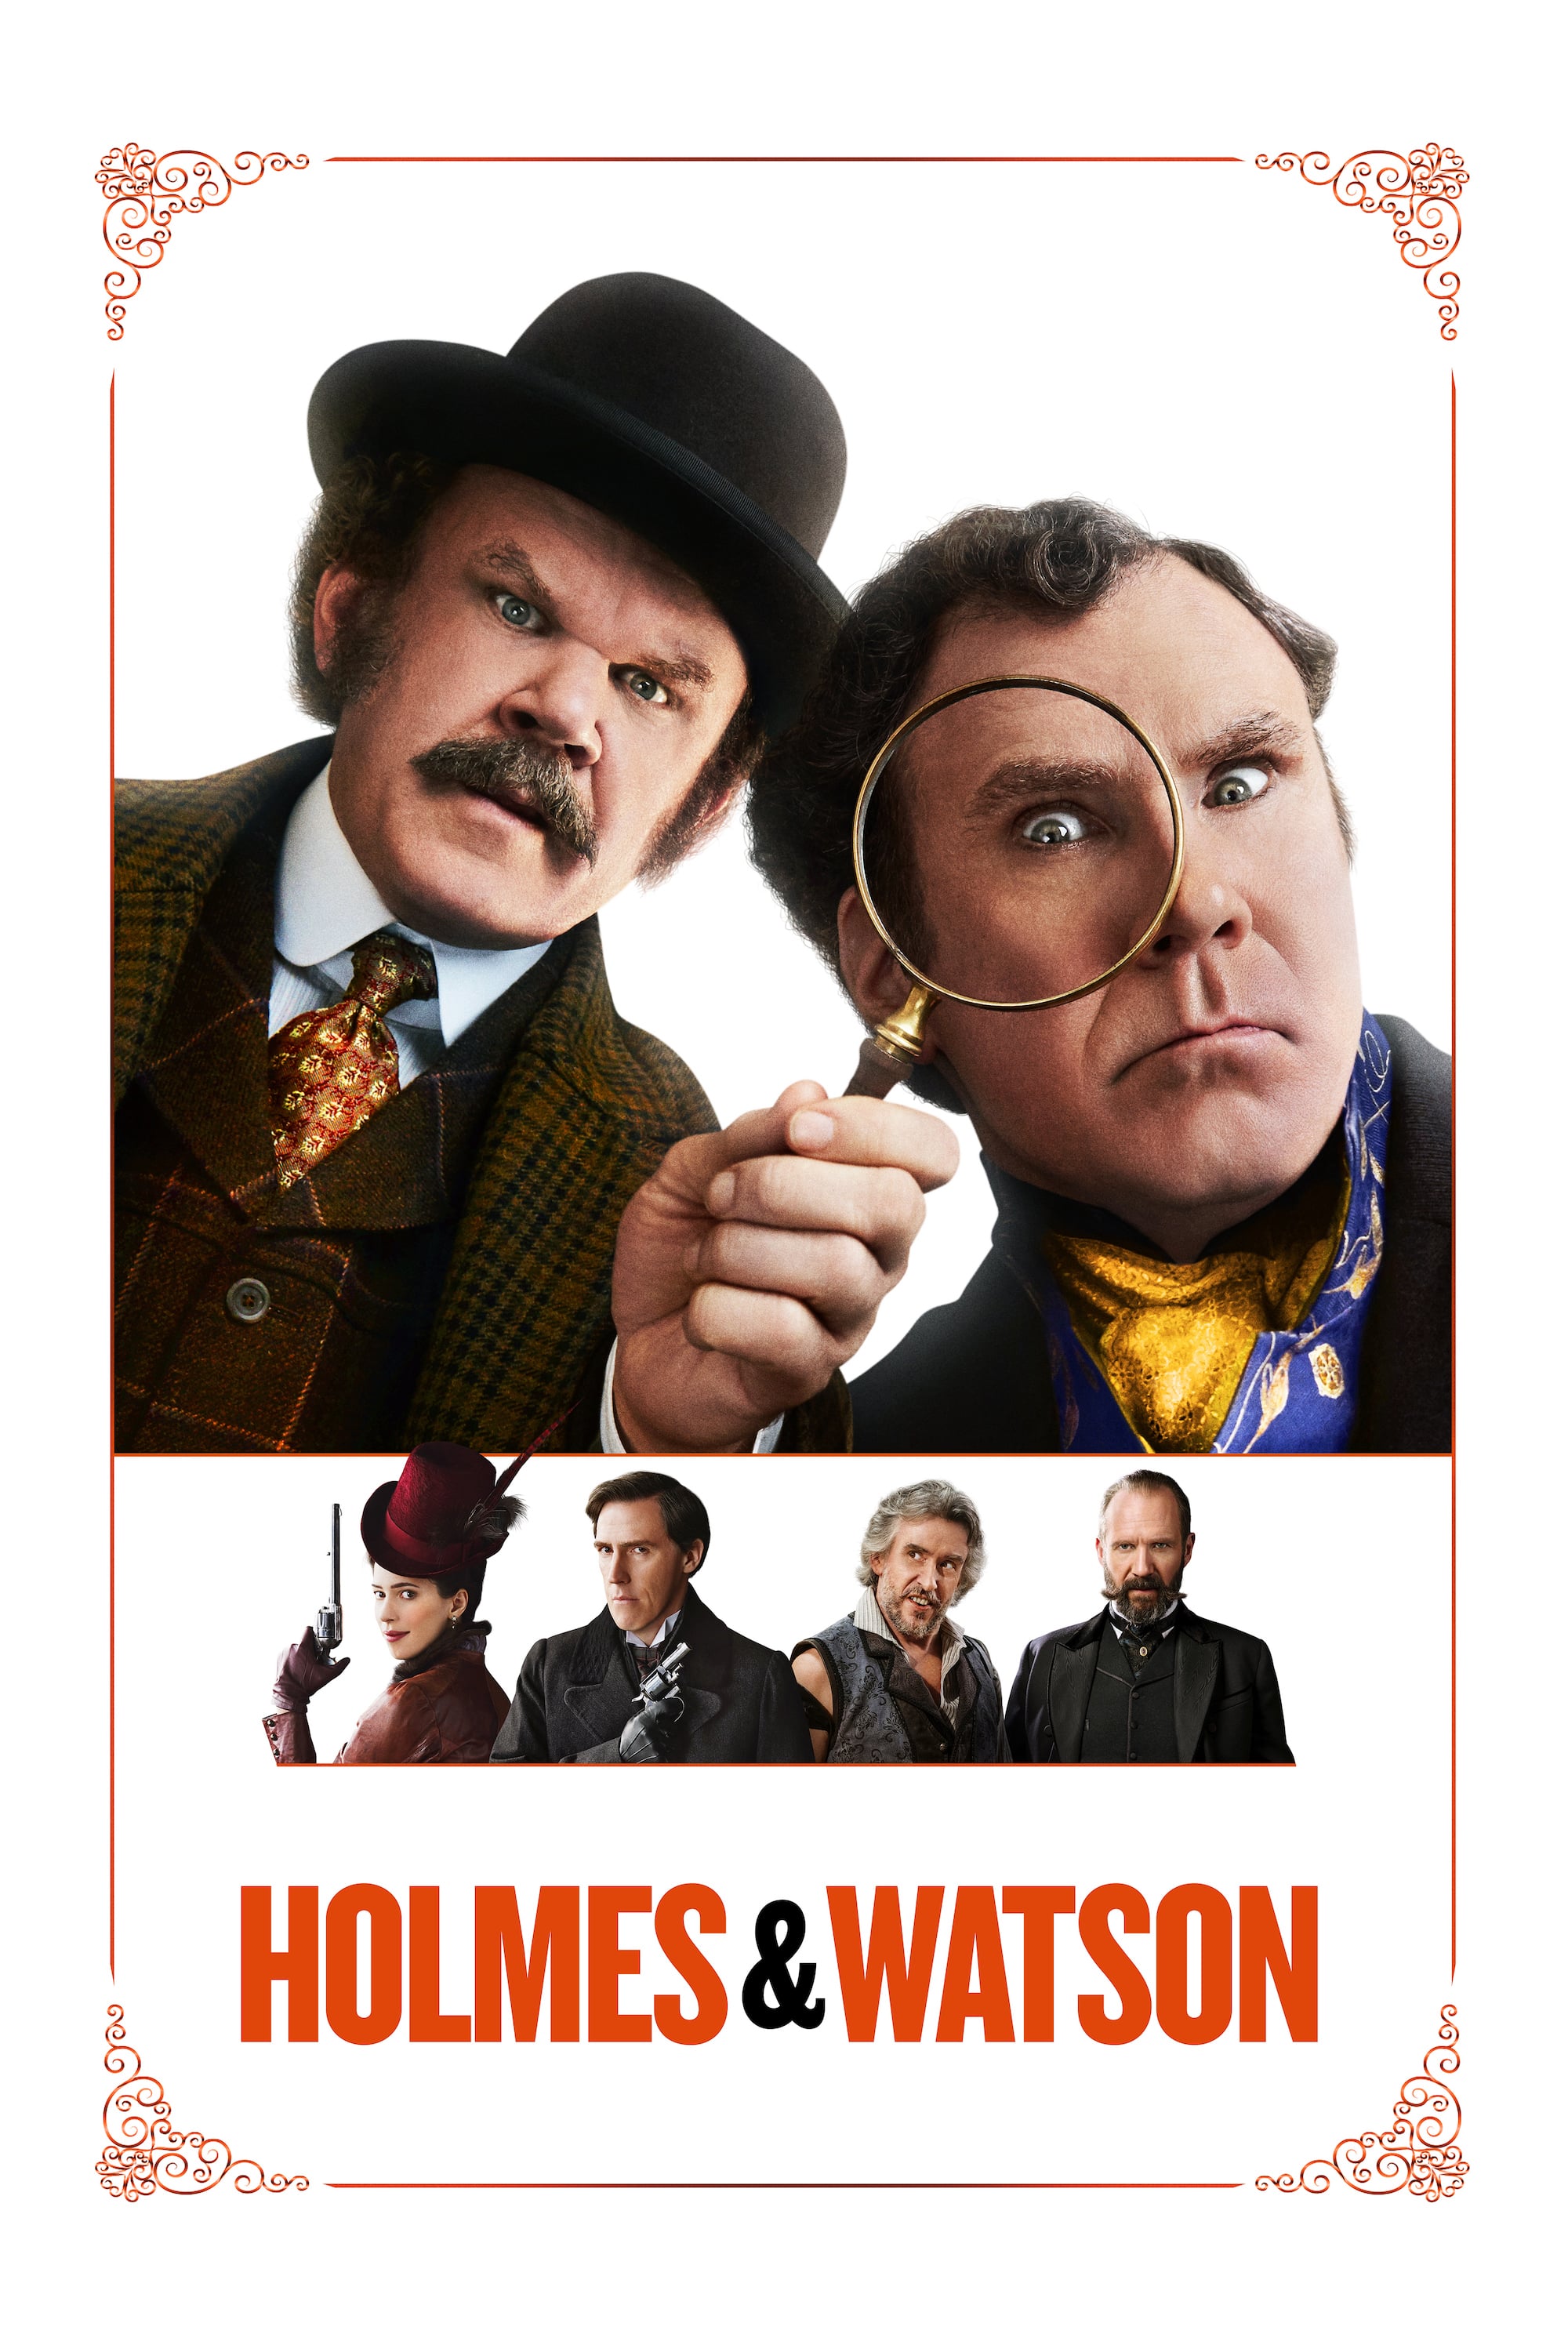 Plakat von "Holmes & Watson"